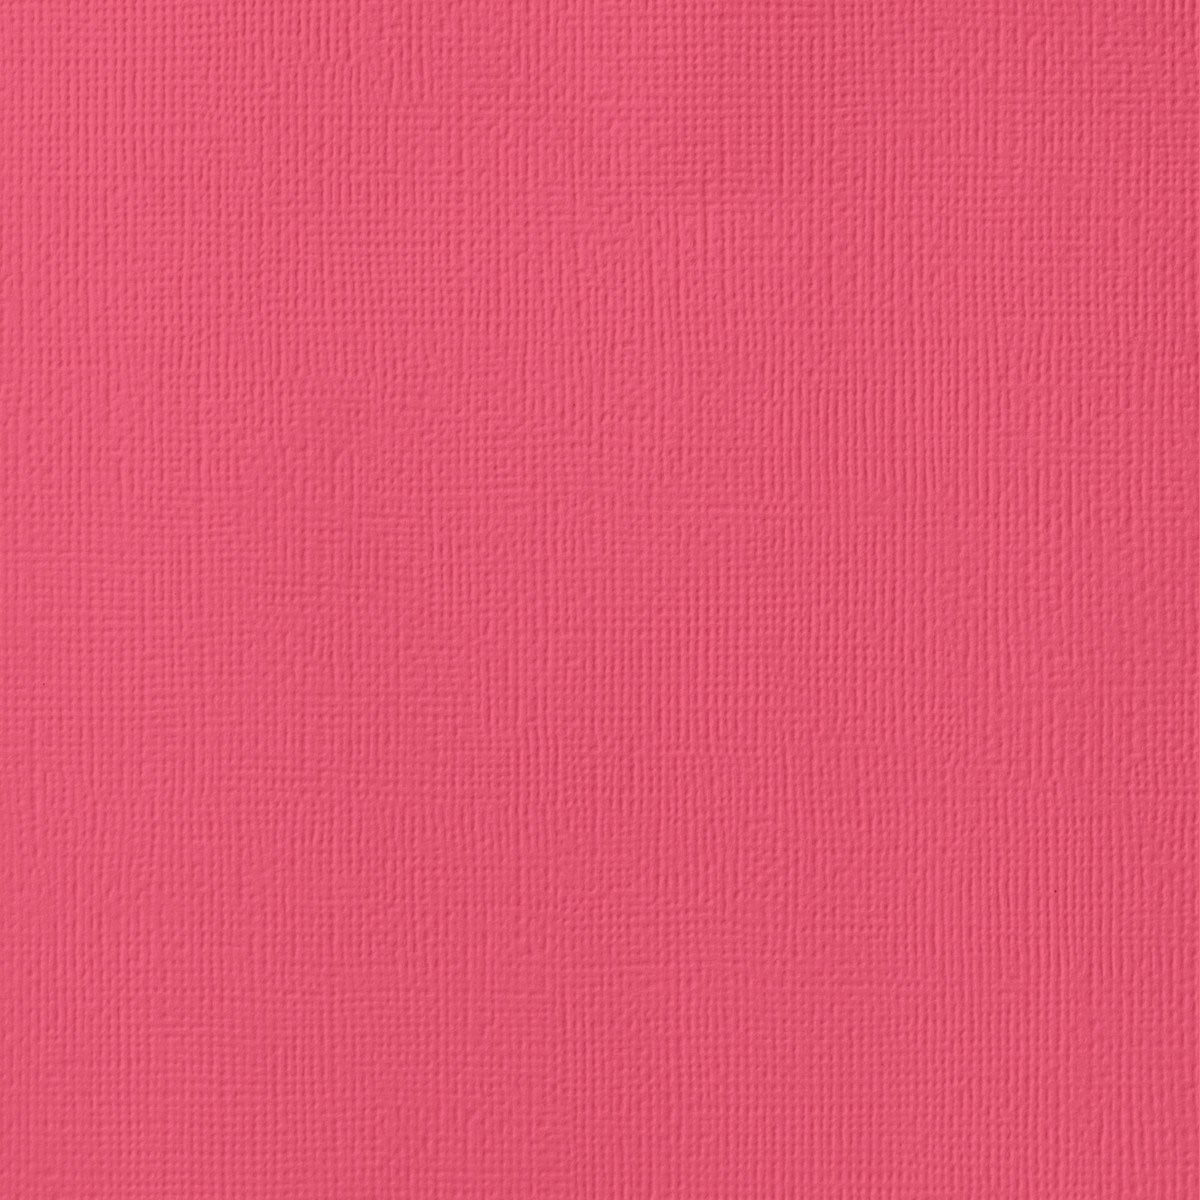 LOLLIPOP Pink cardstock - 12x12 inch - 80 lb - textured scrapbook paper - American Crafts